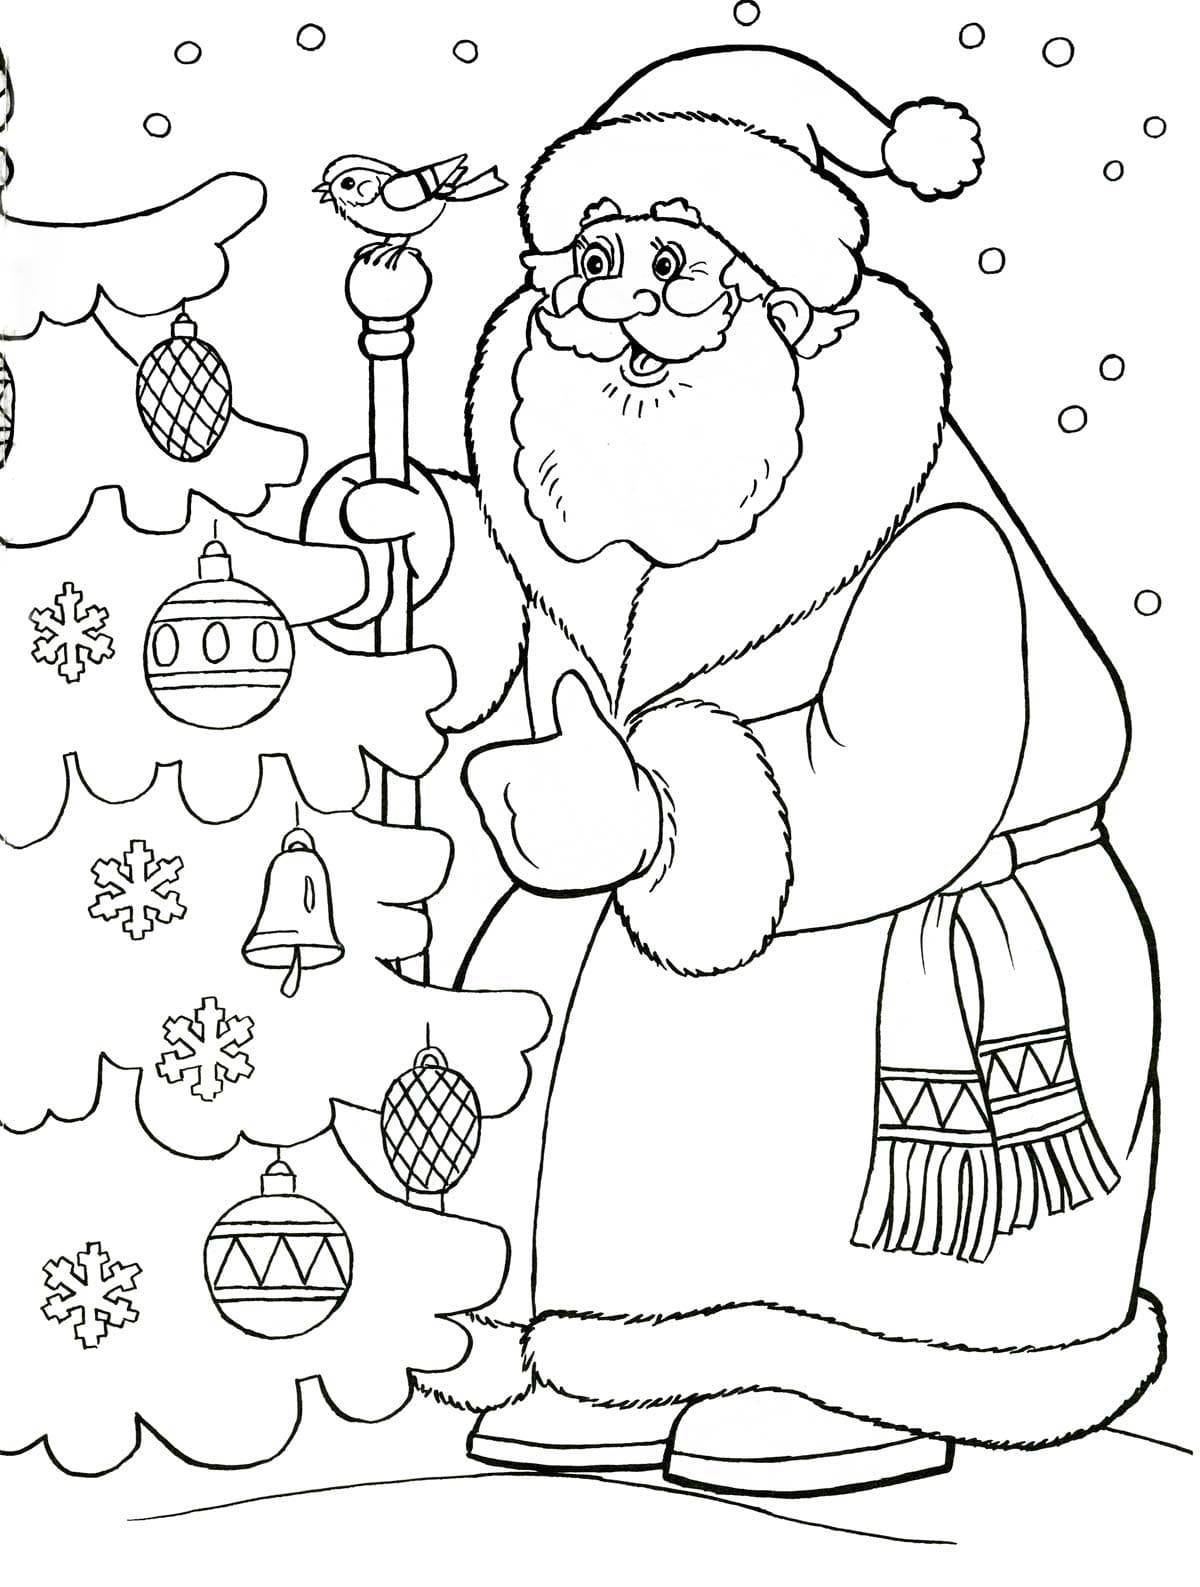 Christmas drawings #3